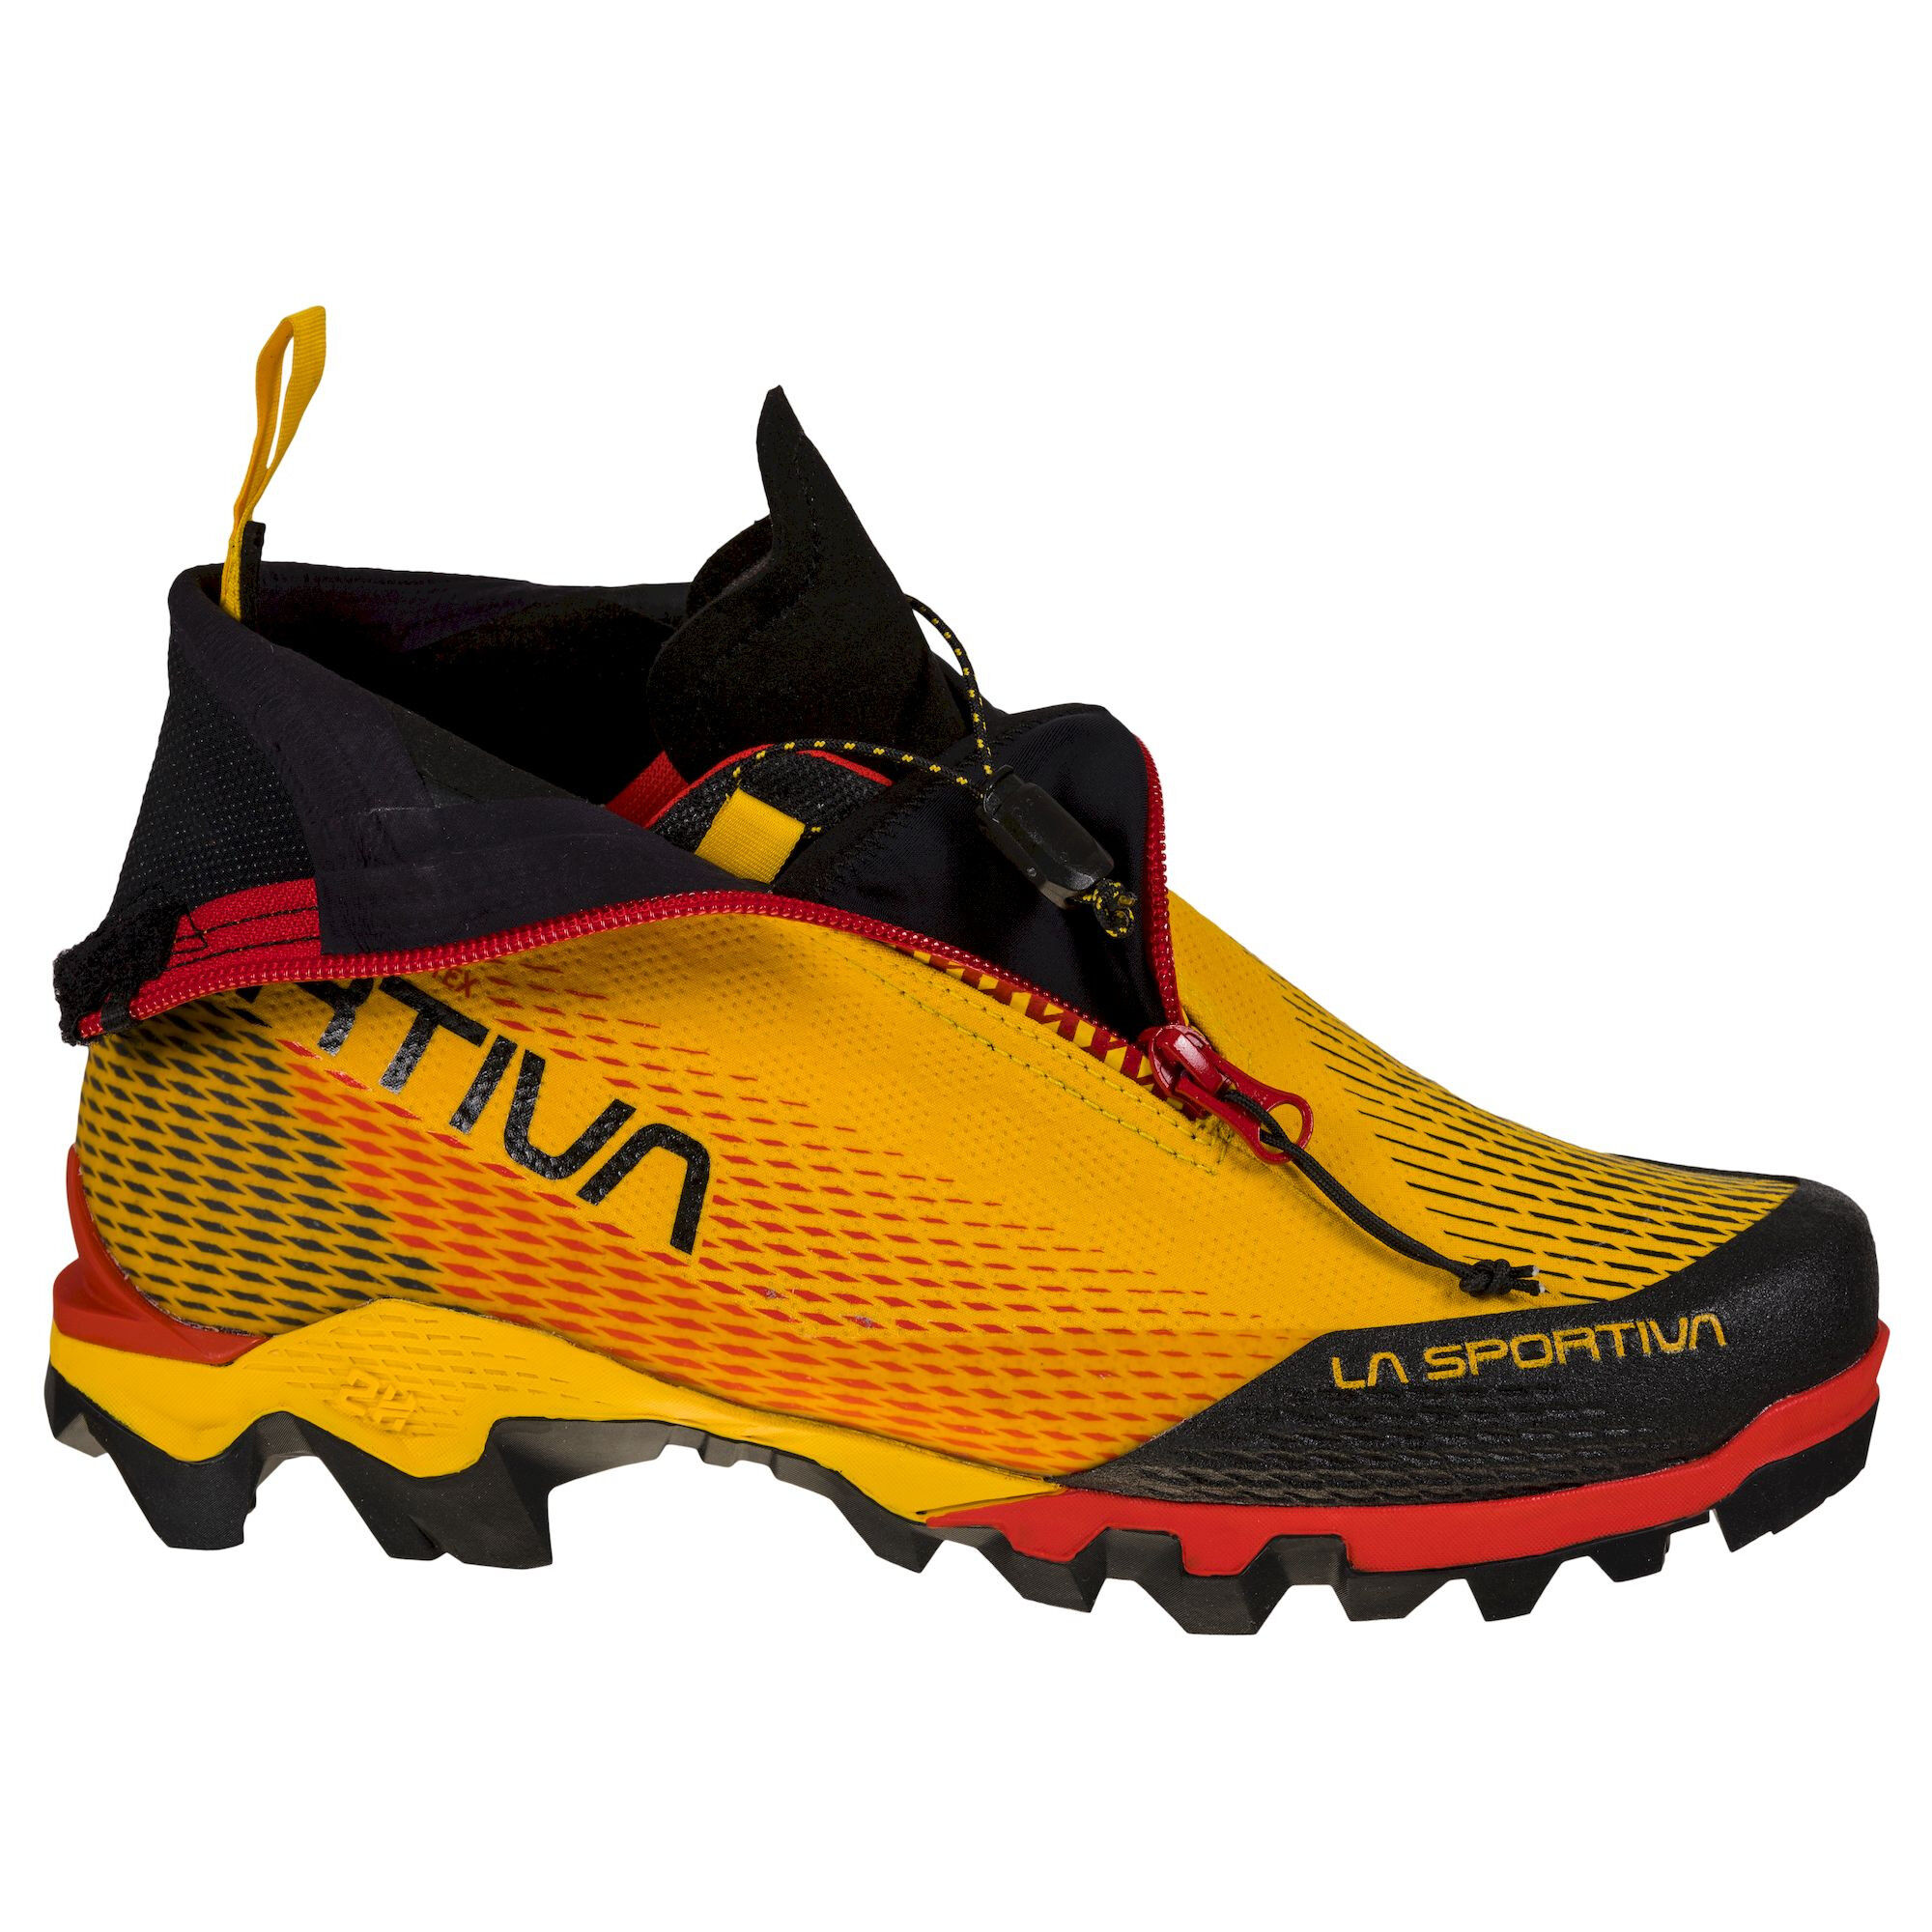 La Sportiva Aequilibrium LT GTX - Mountaineering boots Men's